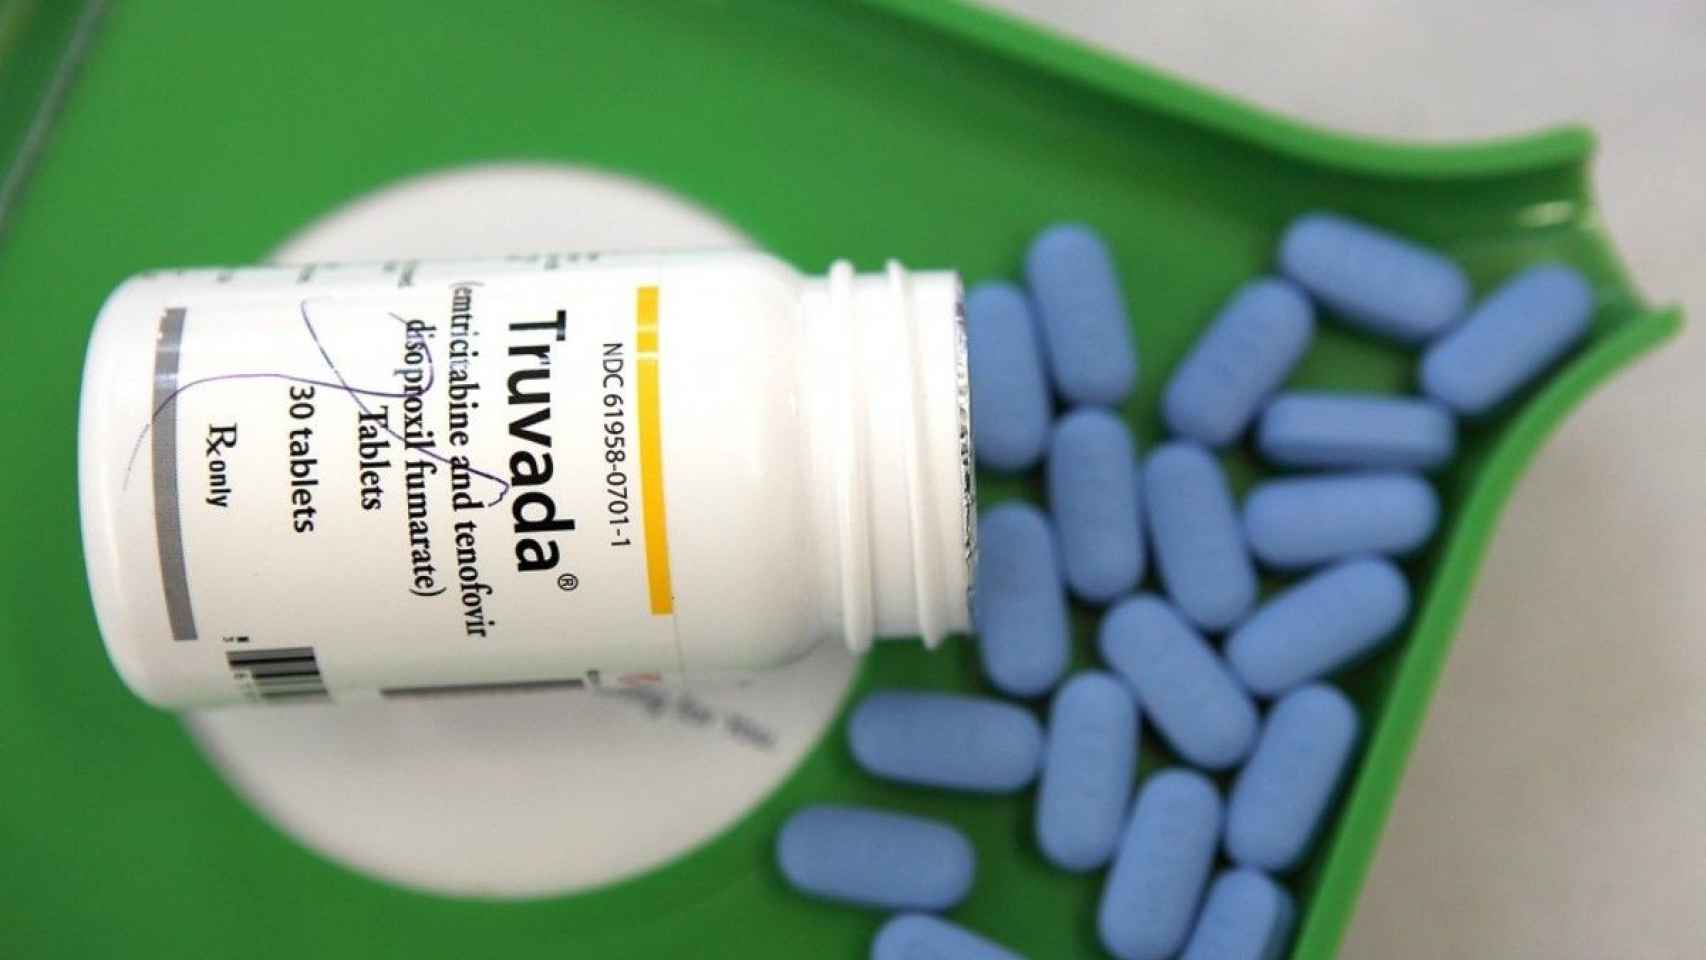 Bote de Truvada, la pastilla gratuita para mantener sexo sin miedo al VIH